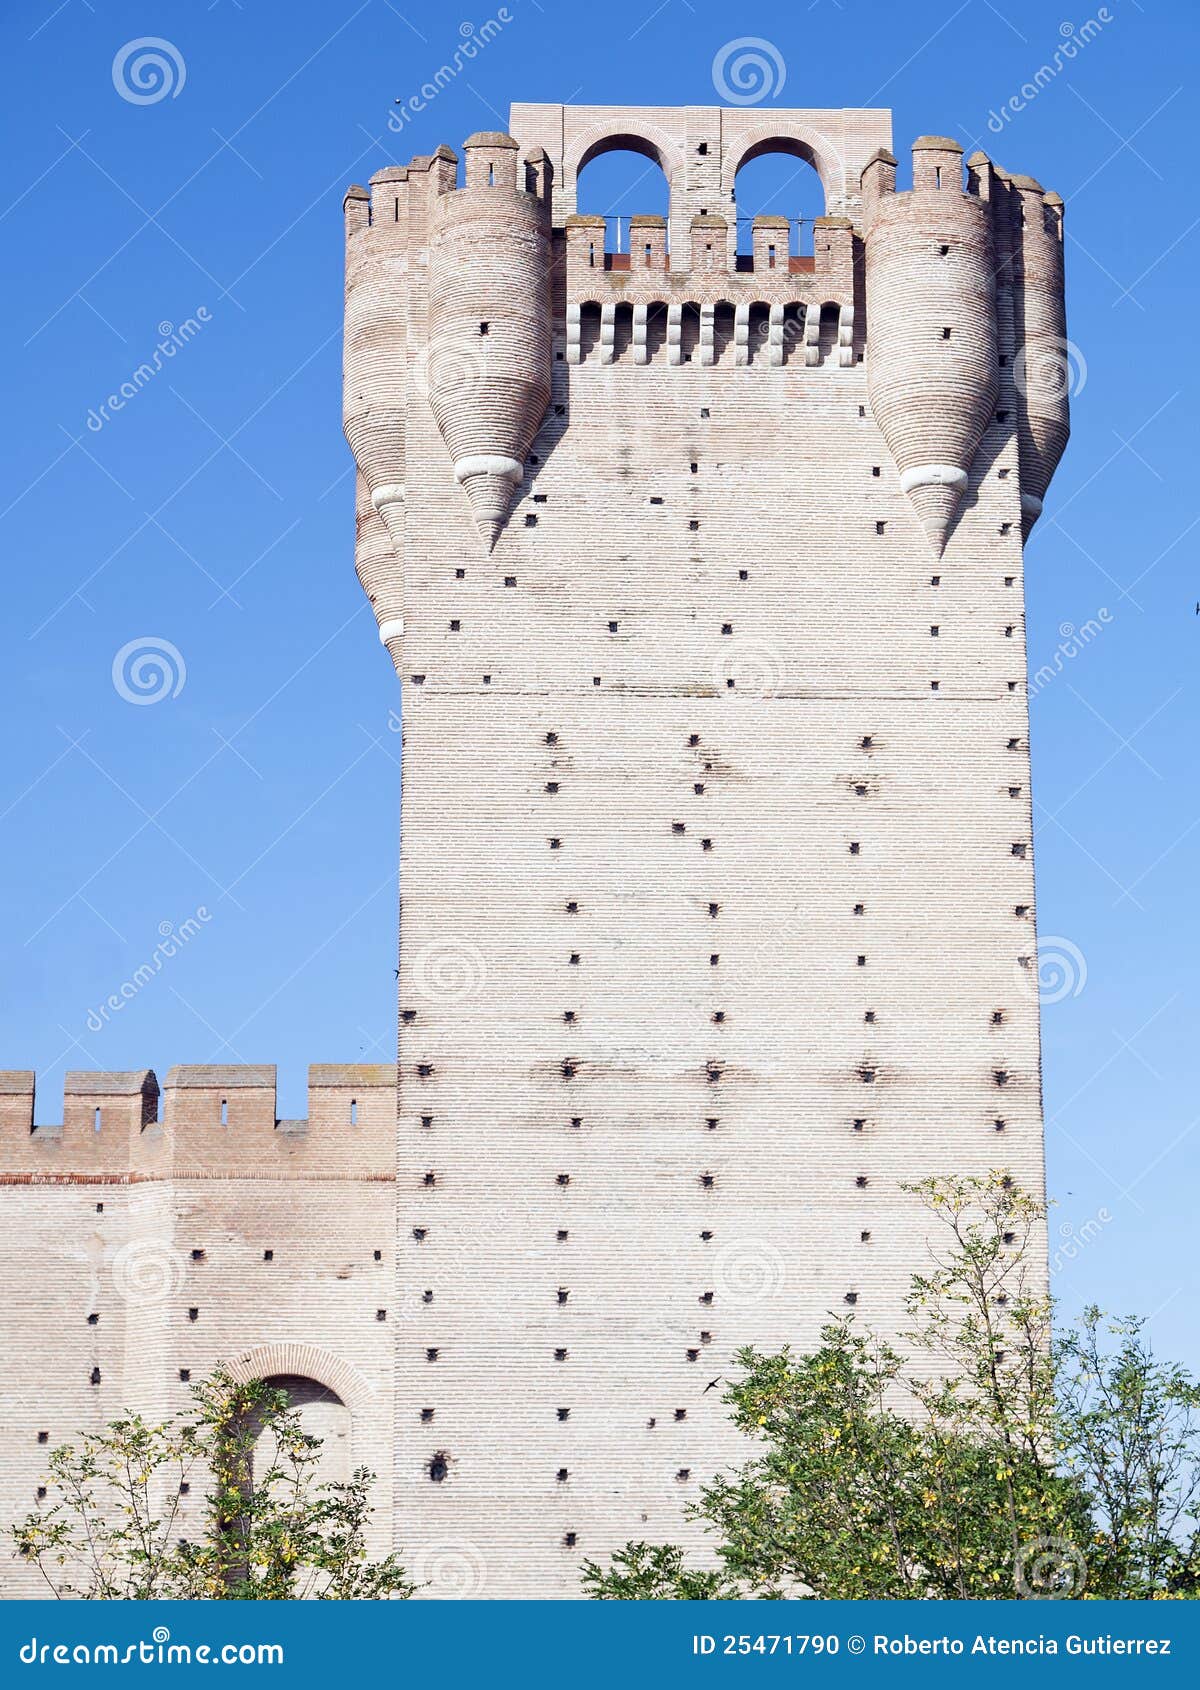 la mota - famous old castle in medina del campo, c